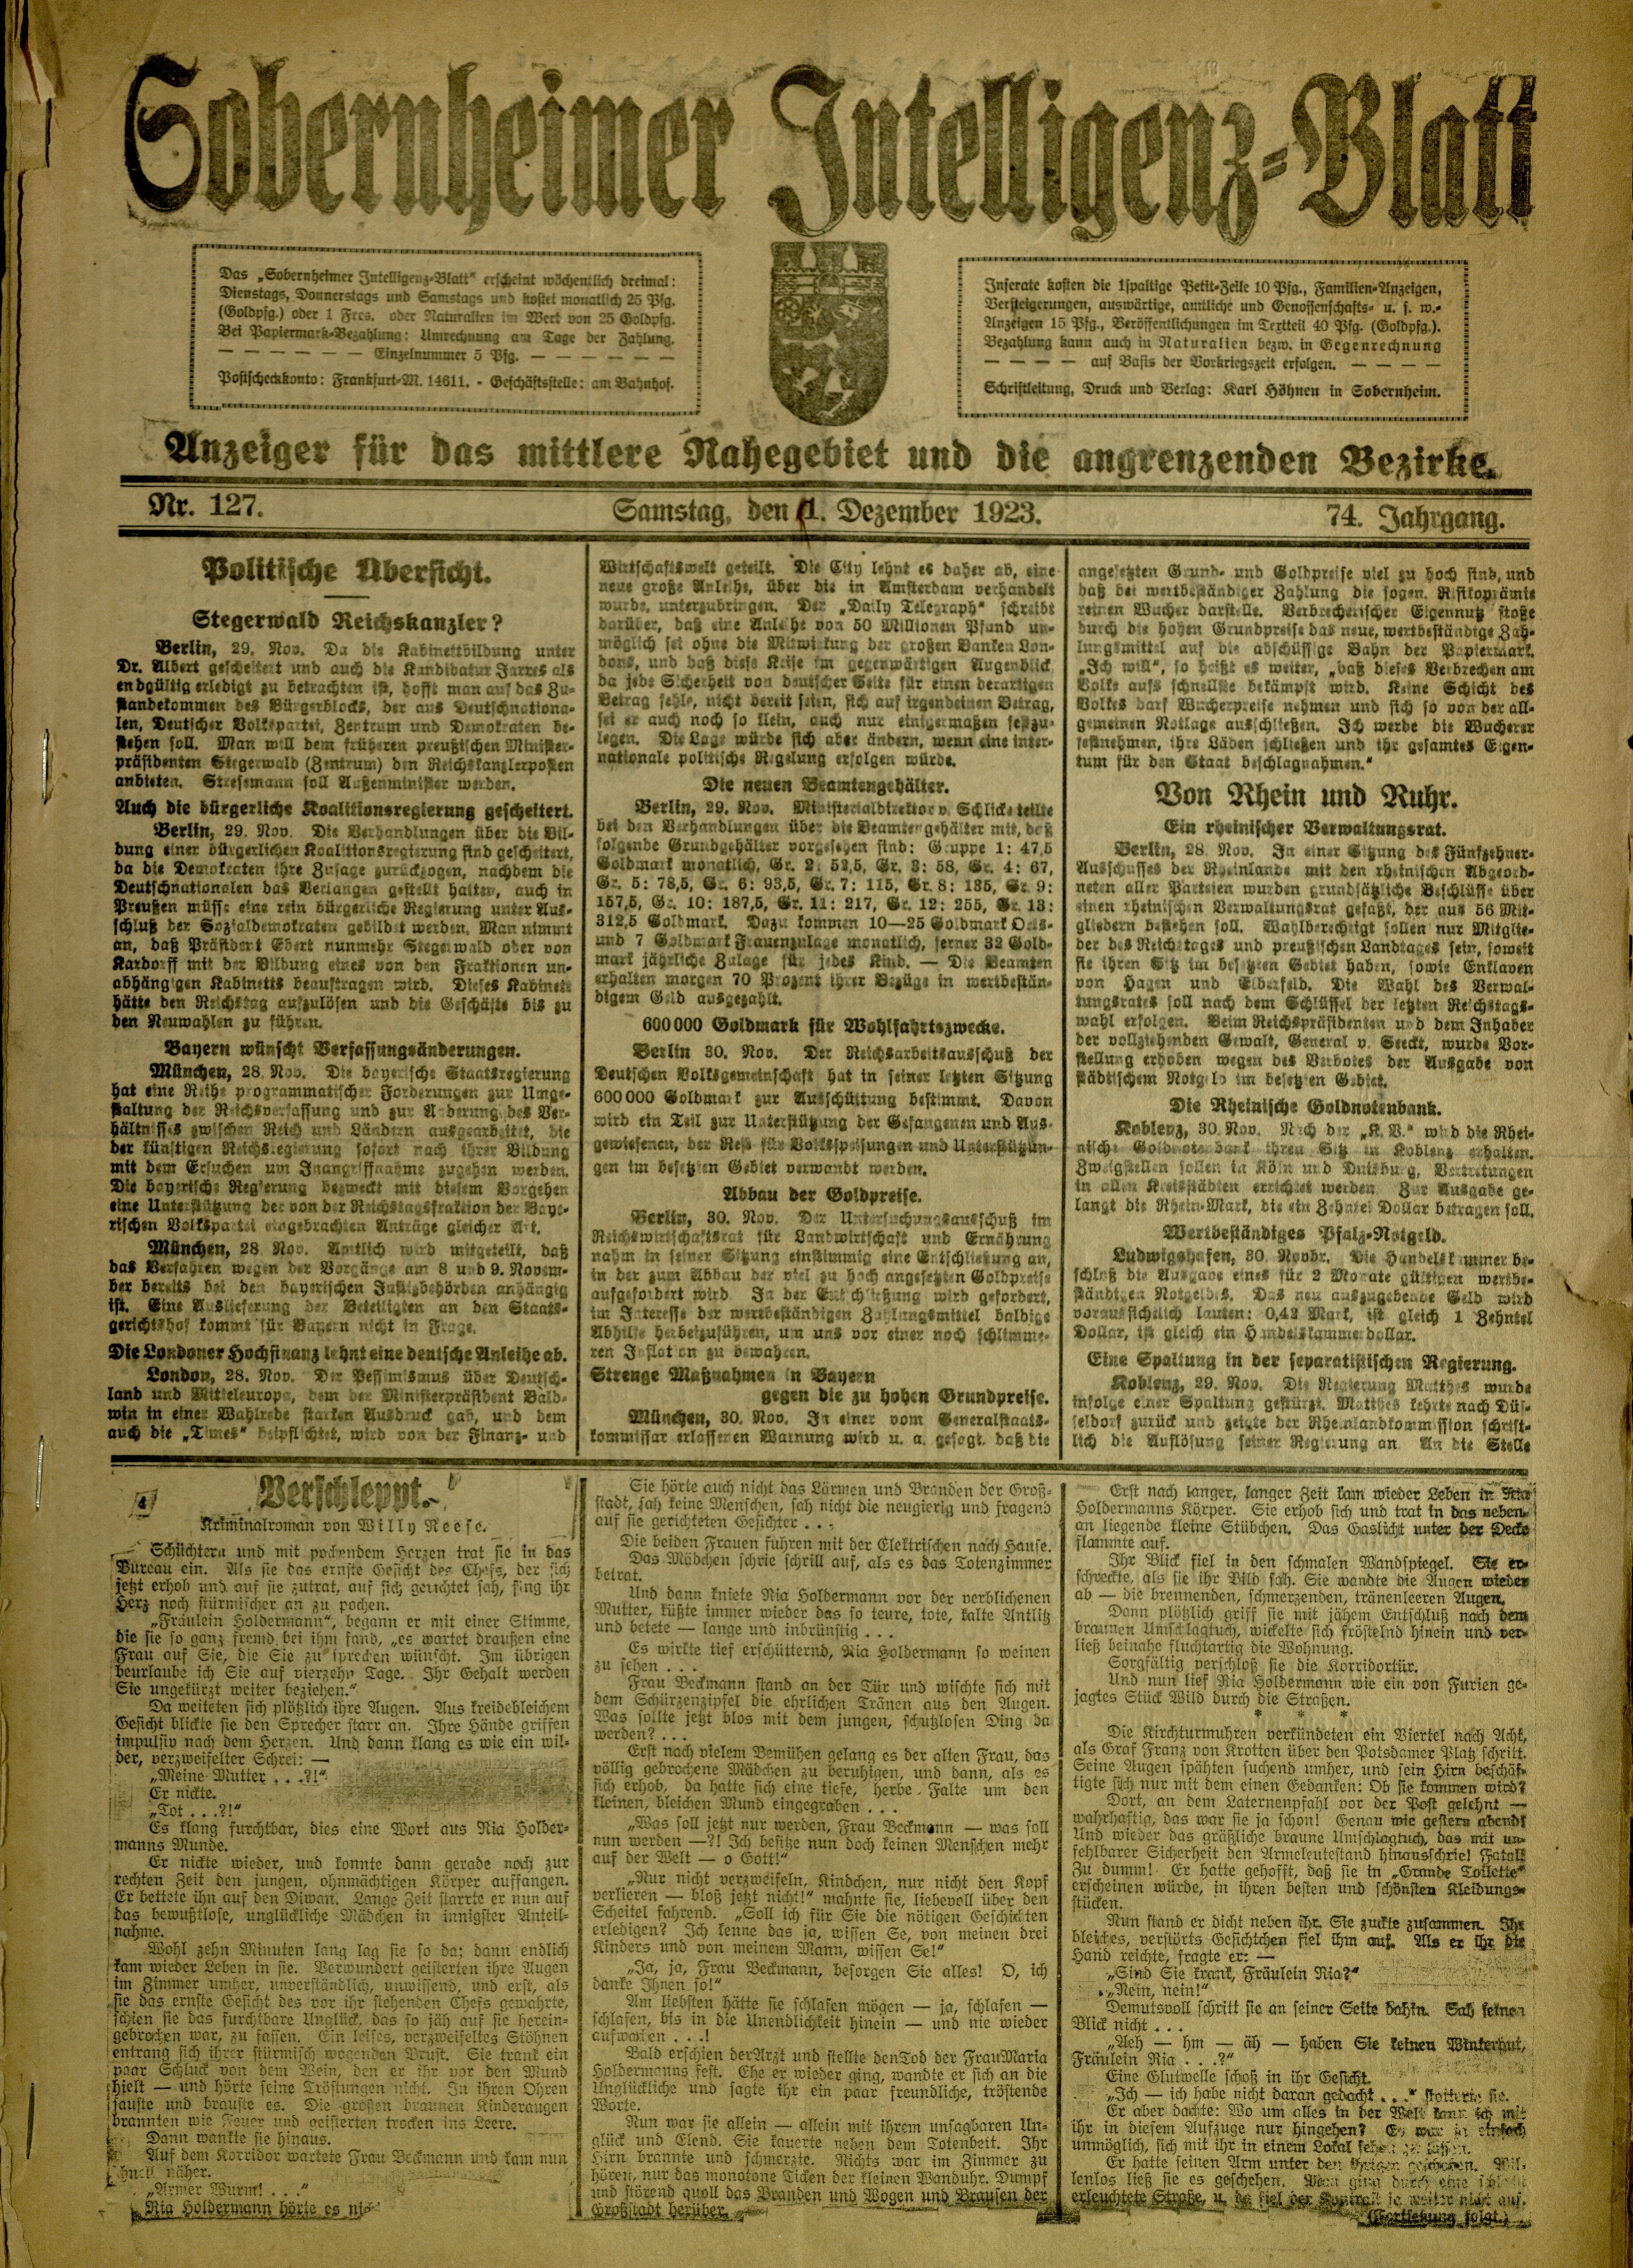 Zeitung: Sobernheimer Intelligenzblatt; Dezember 1923, Jg. 73 Nr. 127 (Heimatmuseum Bad Sobernheim CC BY-NC-SA)